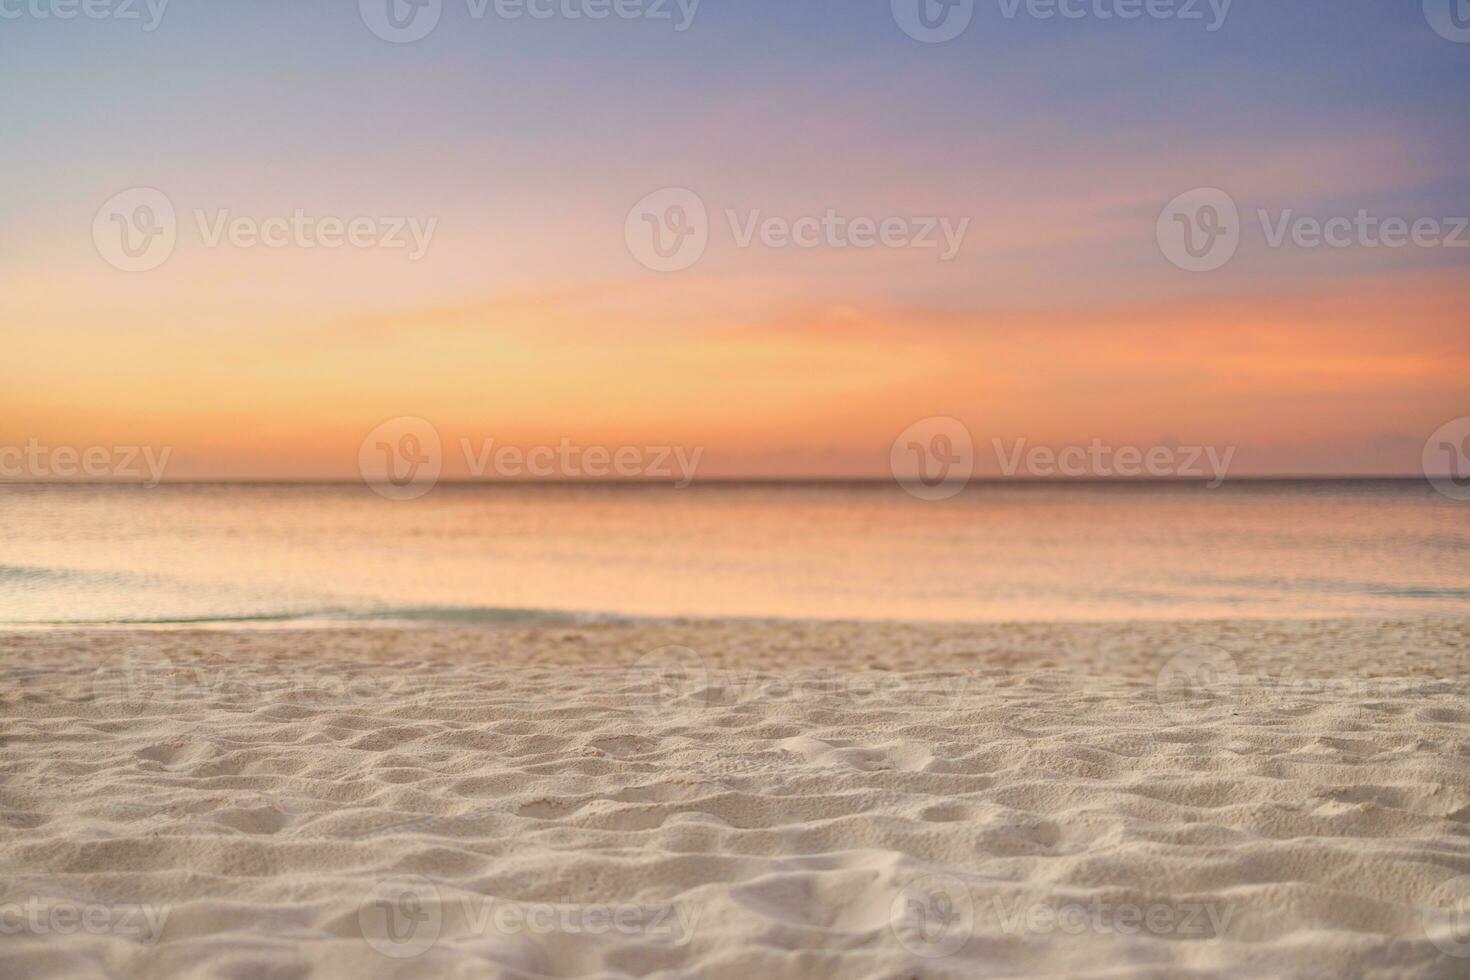 close-up zee zandstrand. panoramisch strandlandschap. inspireren tropische strand zeegezicht horizon. oranje en gouden zonsondergang hemel kalmte rustig ontspannen zonlicht zomerstemming. vakantie reizen vakantie banner foto